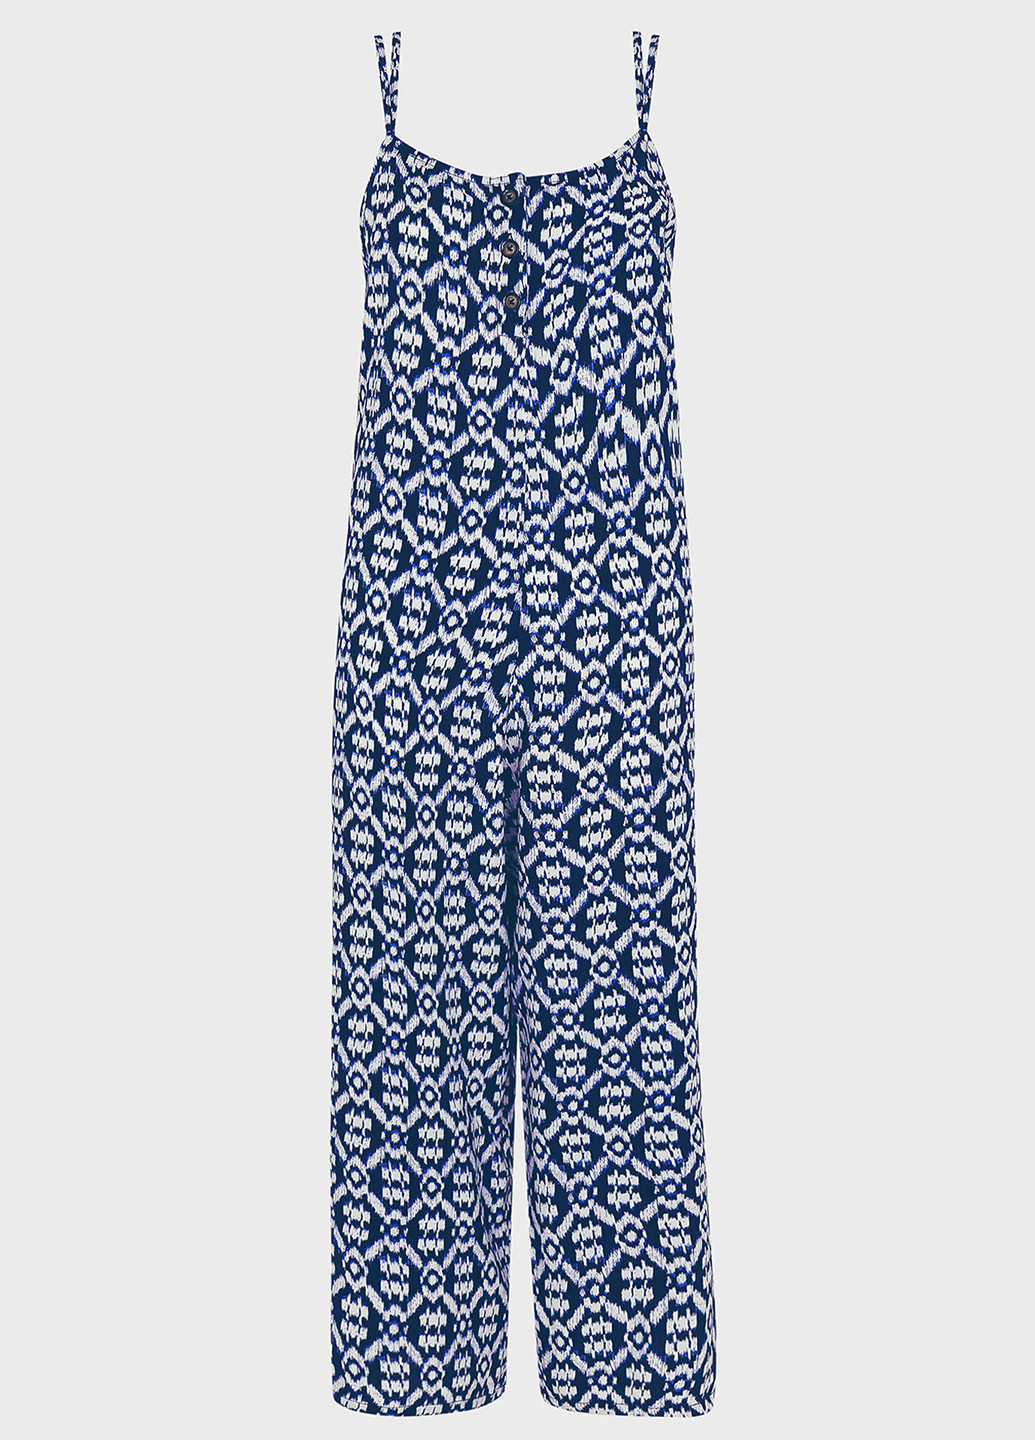 Комбинезон Accessorize комбинезон-брюки орнамент синий кэжуал вискоза